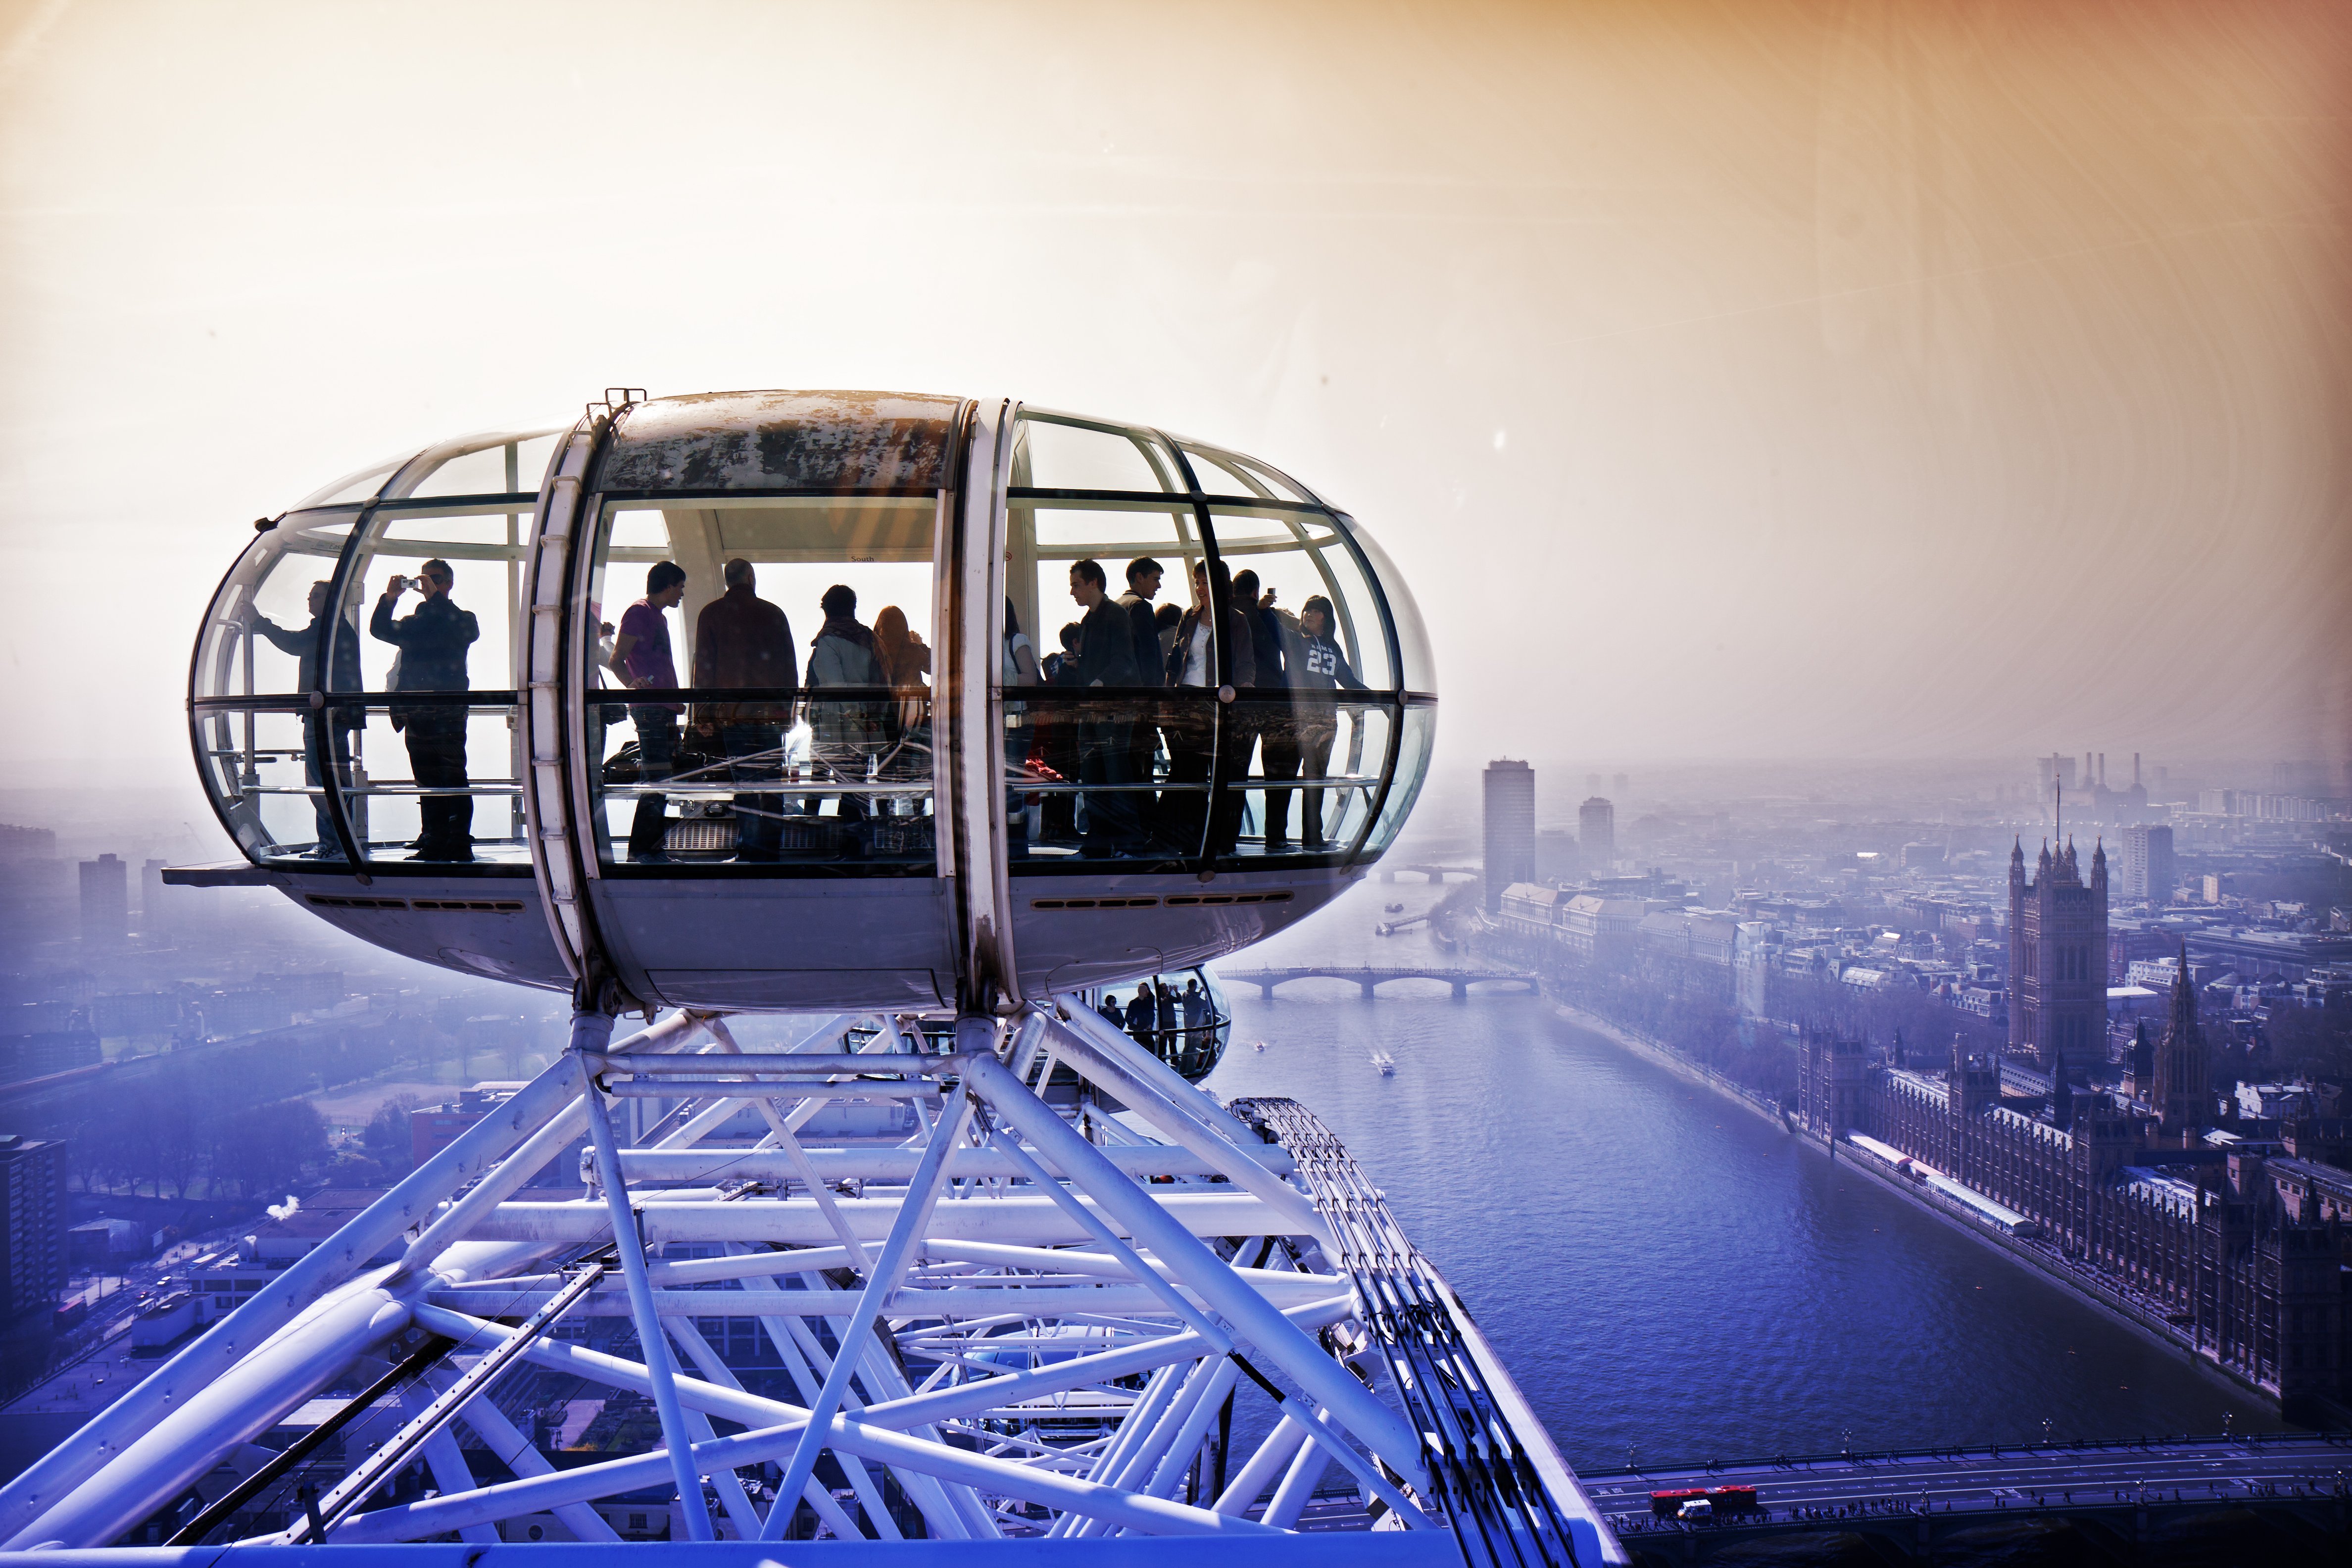 One of the london s. Колесо обозрения "Лондонский глаз" (London Eye). Великобритания колесо обозрения London Eye. Лондонский глаз достопримечательности Лондона. Достопримечательности Лондона «Лондонский глаз» (London Eye).